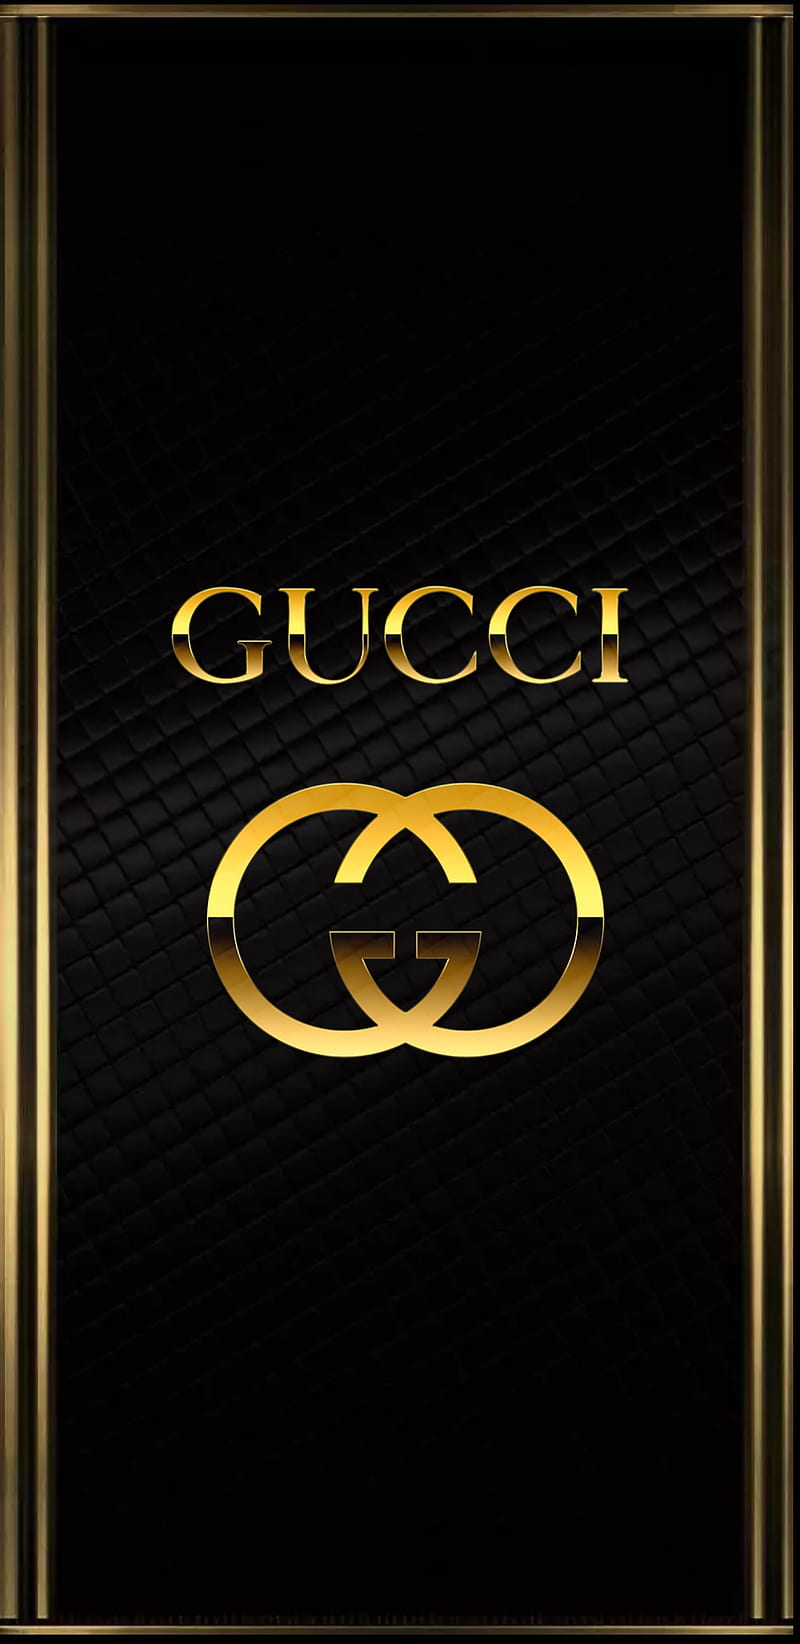 Logo Gucci được làm từ vàng là biểu tượng cho đẳng cấp và giàu có. Cùng khám phá hình ảnh logo Gucci được làm từ vàng sáng bóng và rực rỡ.